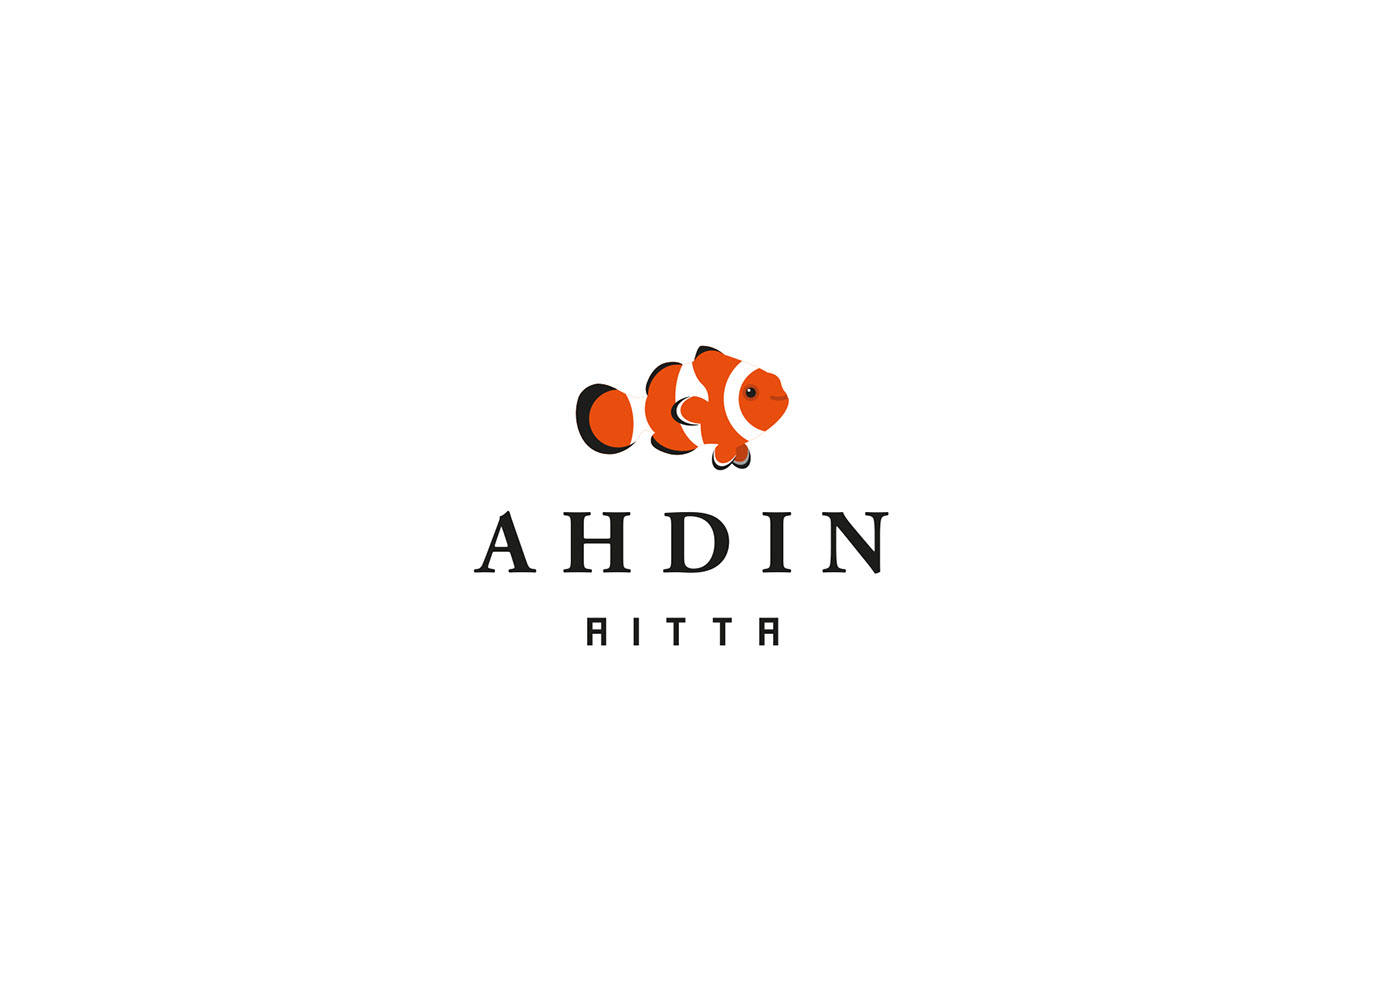 aquarium Clownfish designer fish graphicdesigner logo logodesign logodesigner Logotype petshop